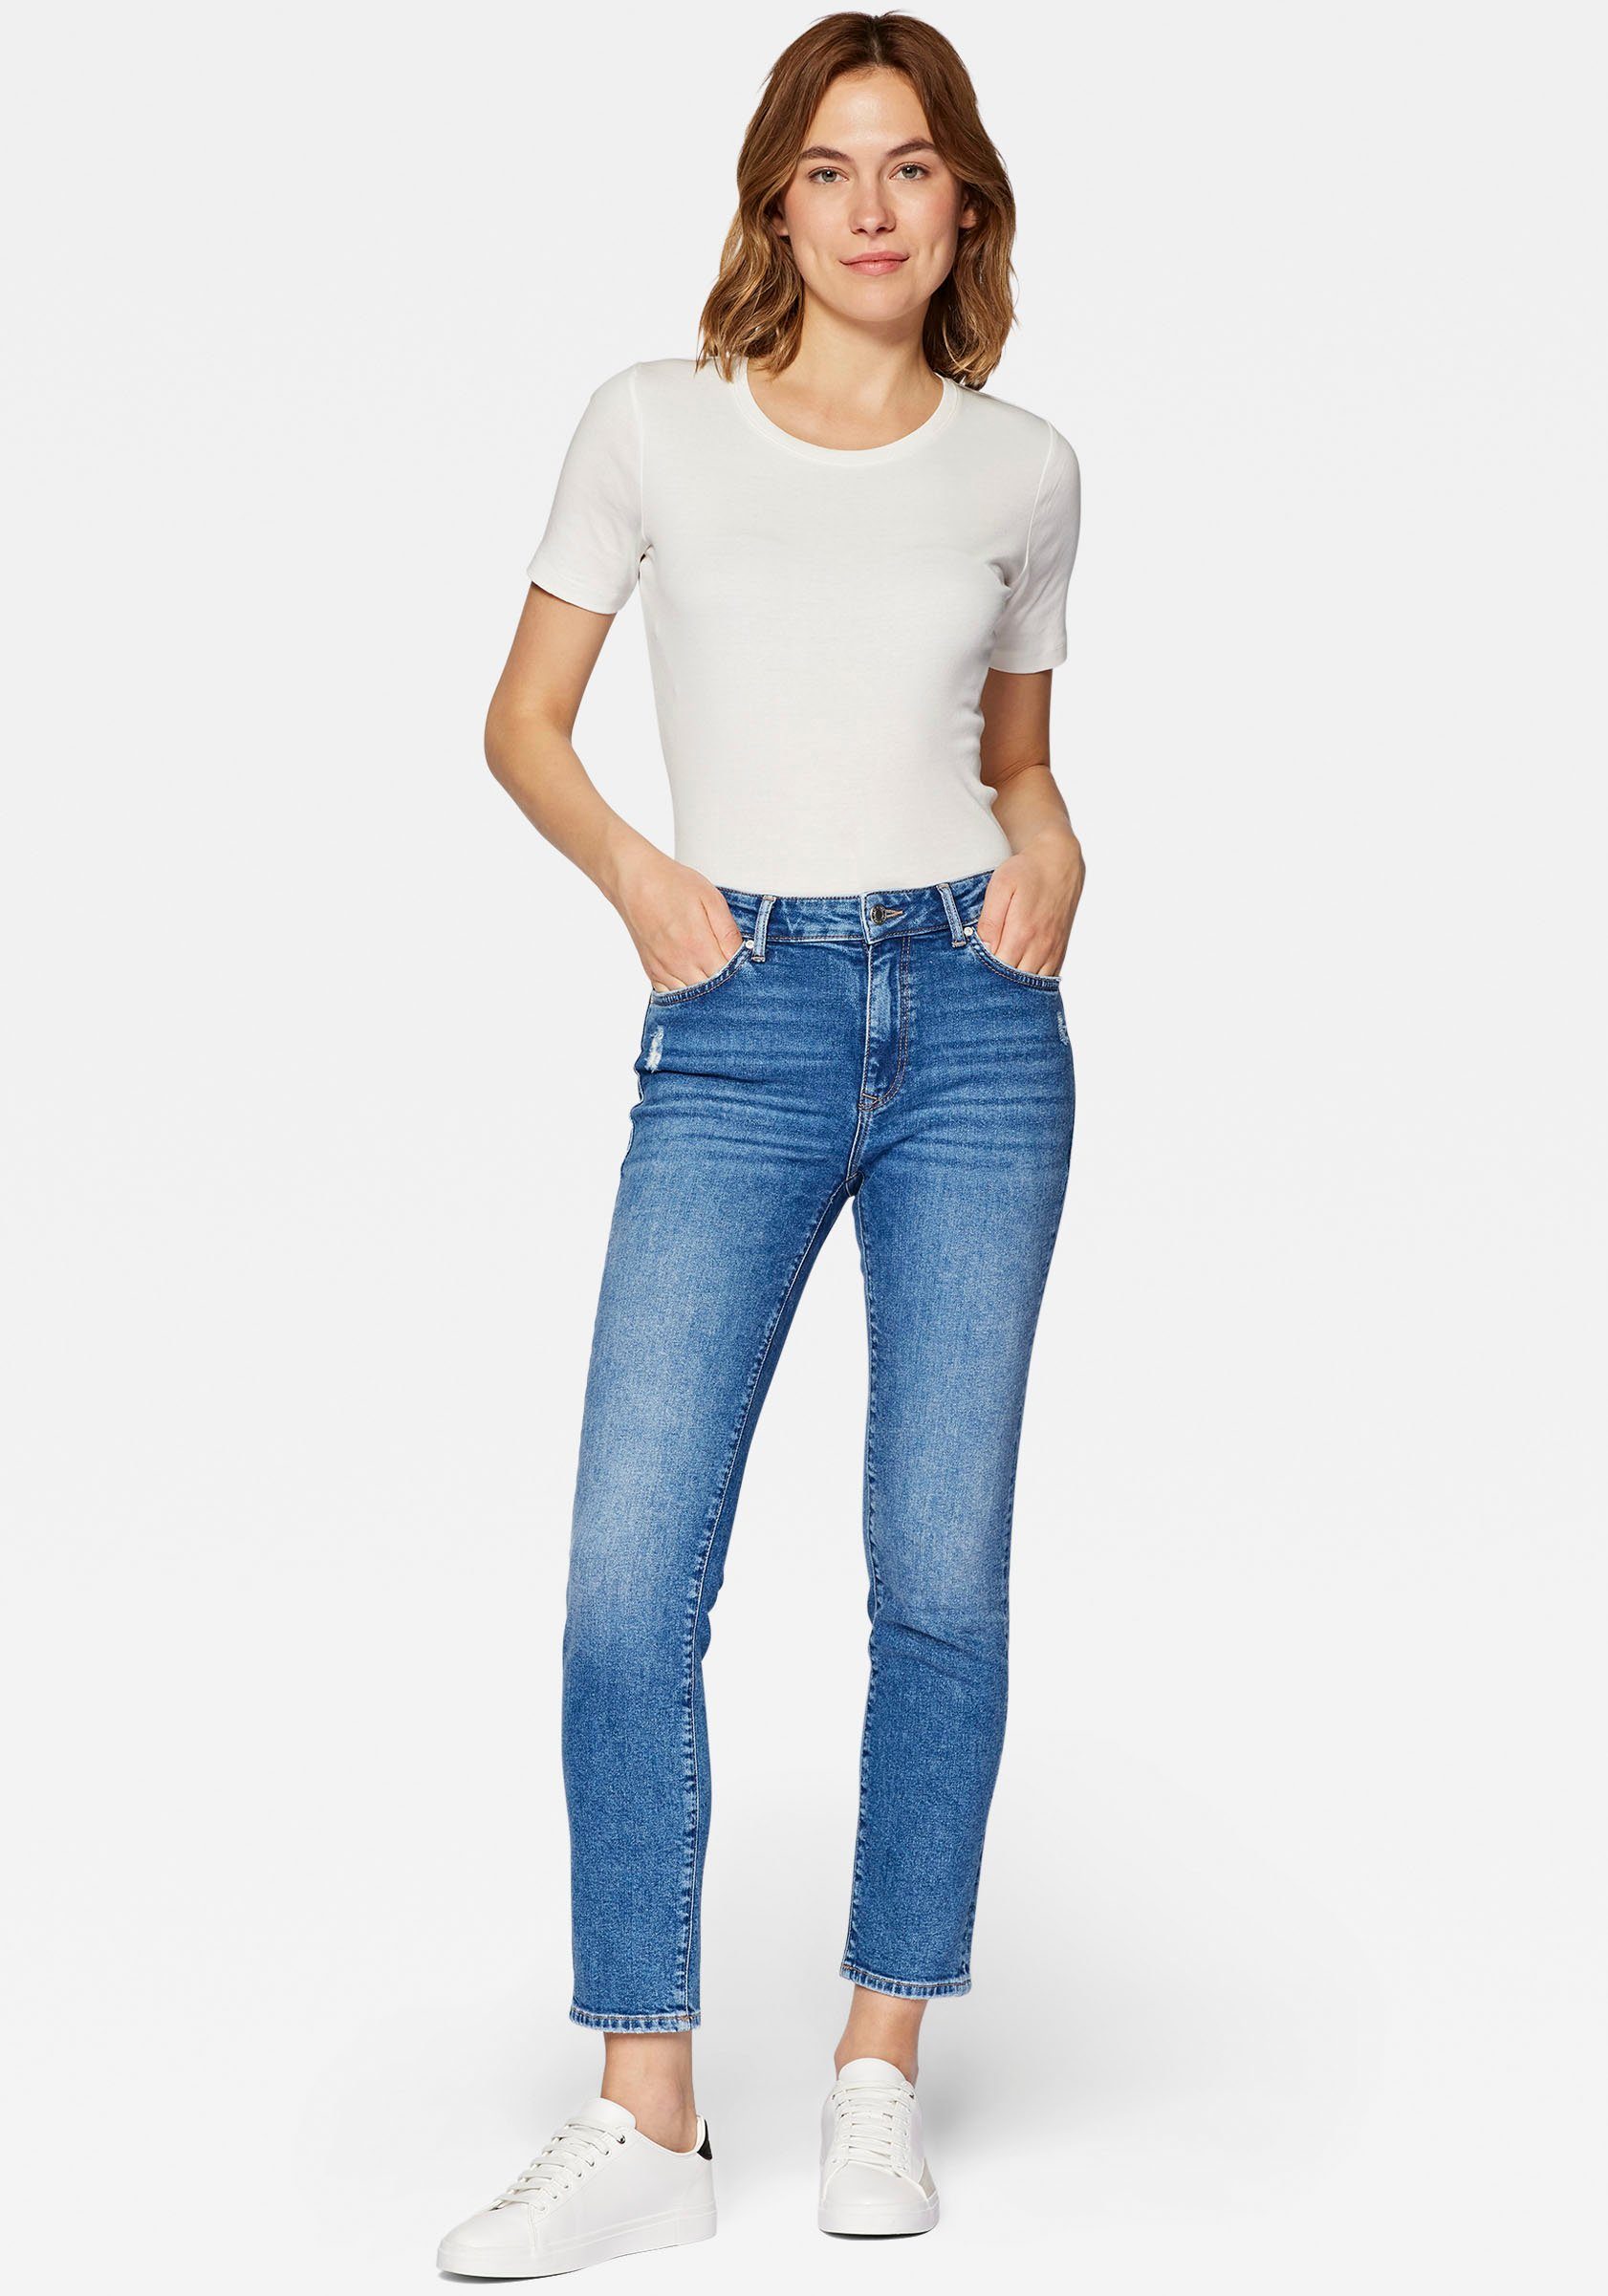 Mavi Slim-fit-Jeans trageangenehmer Stretchdenim blue) Verarbeitung blue dank denim hochwertiger mid (denim